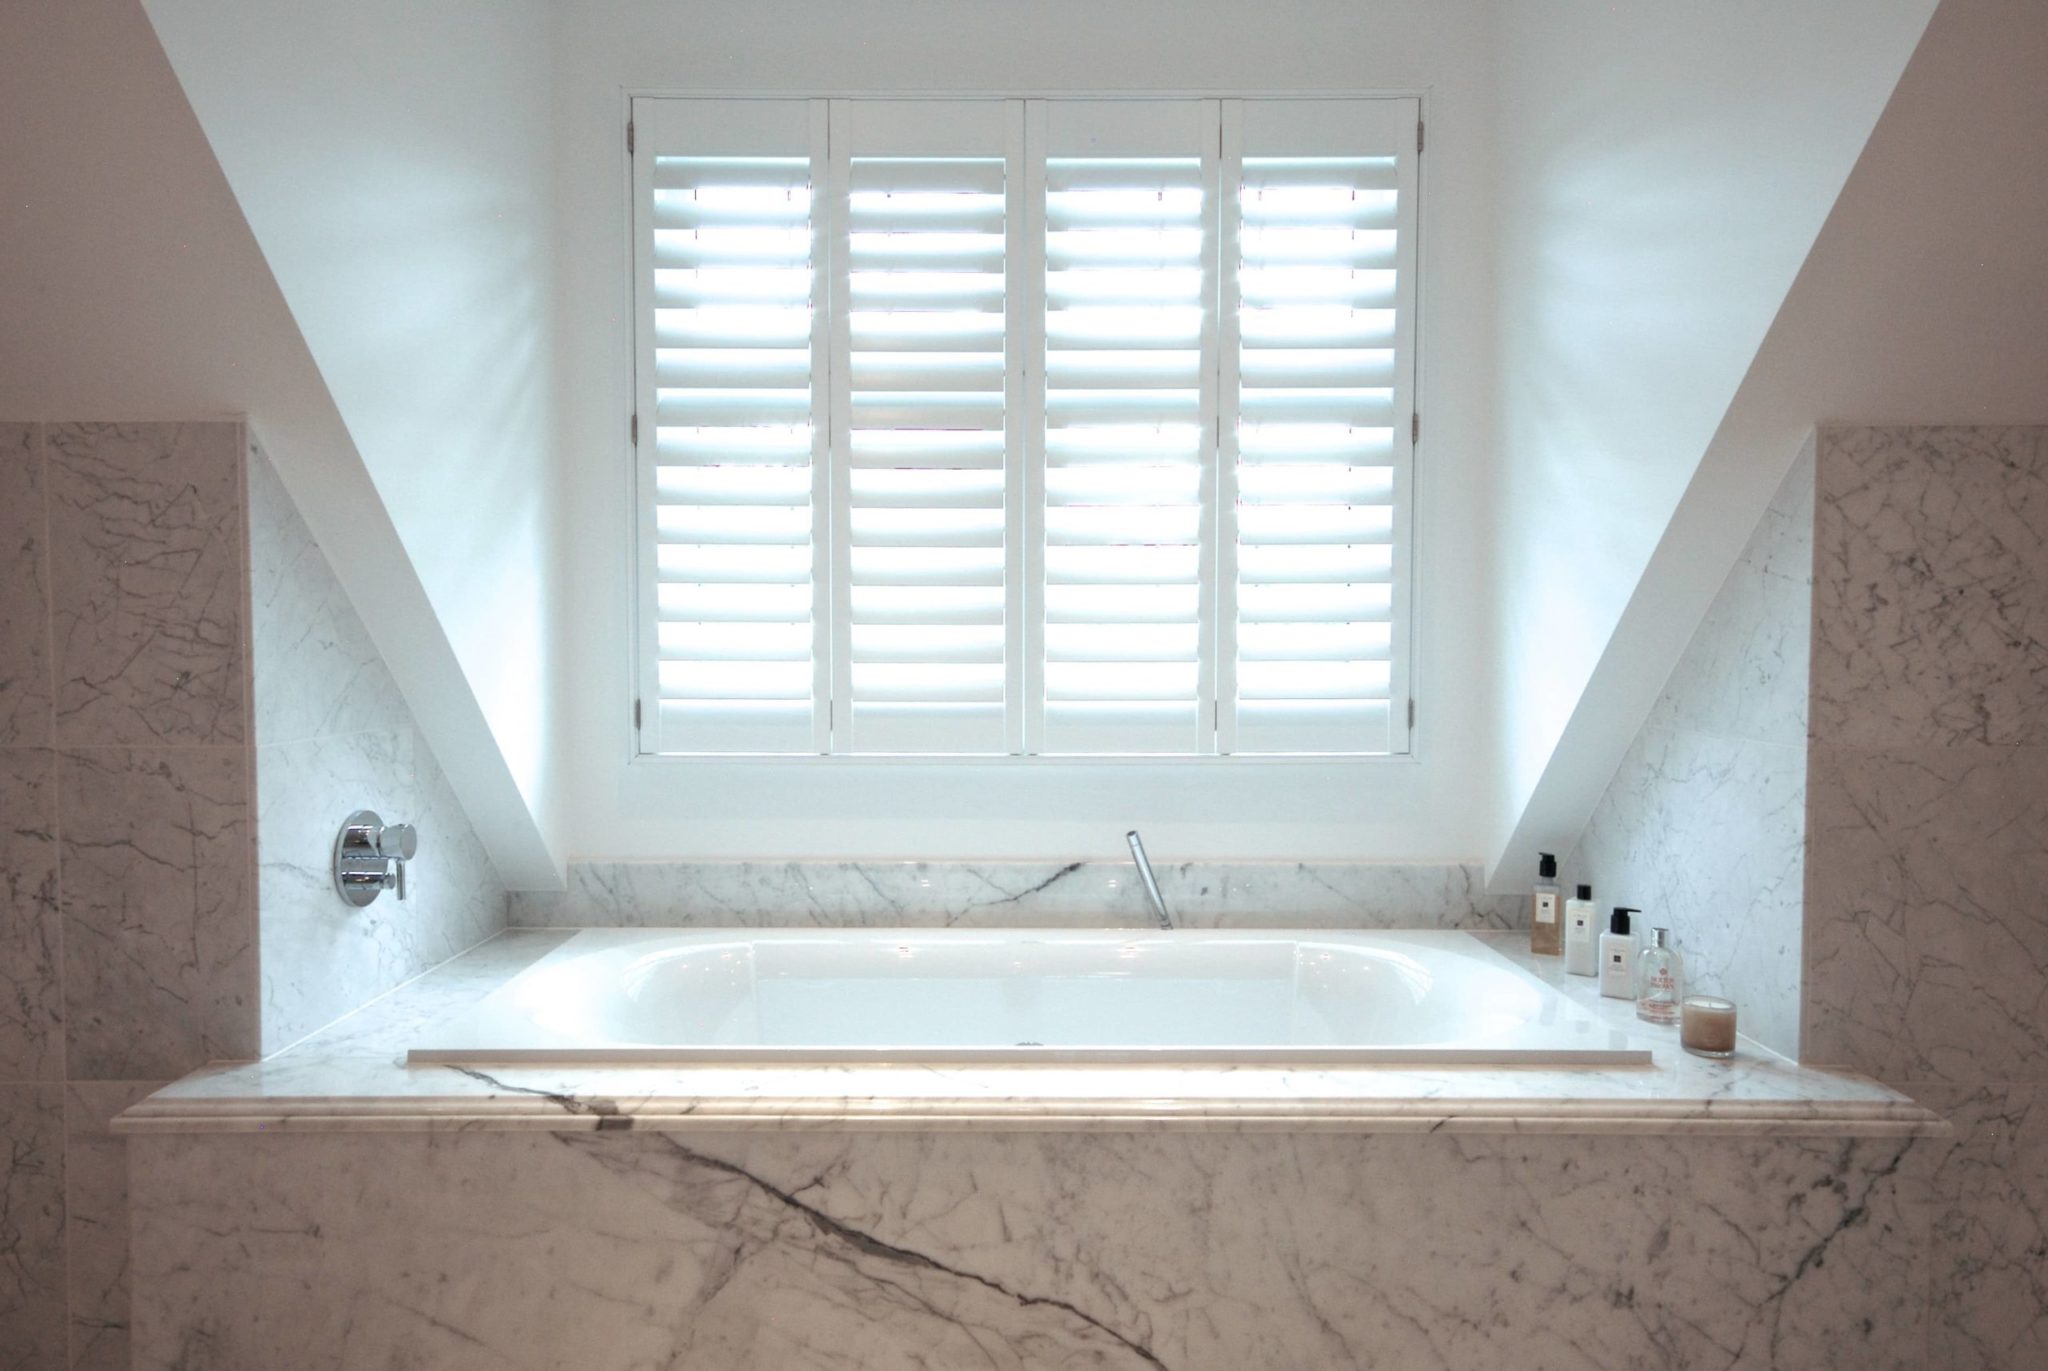 a bathroom with a large white bathtub under a window.